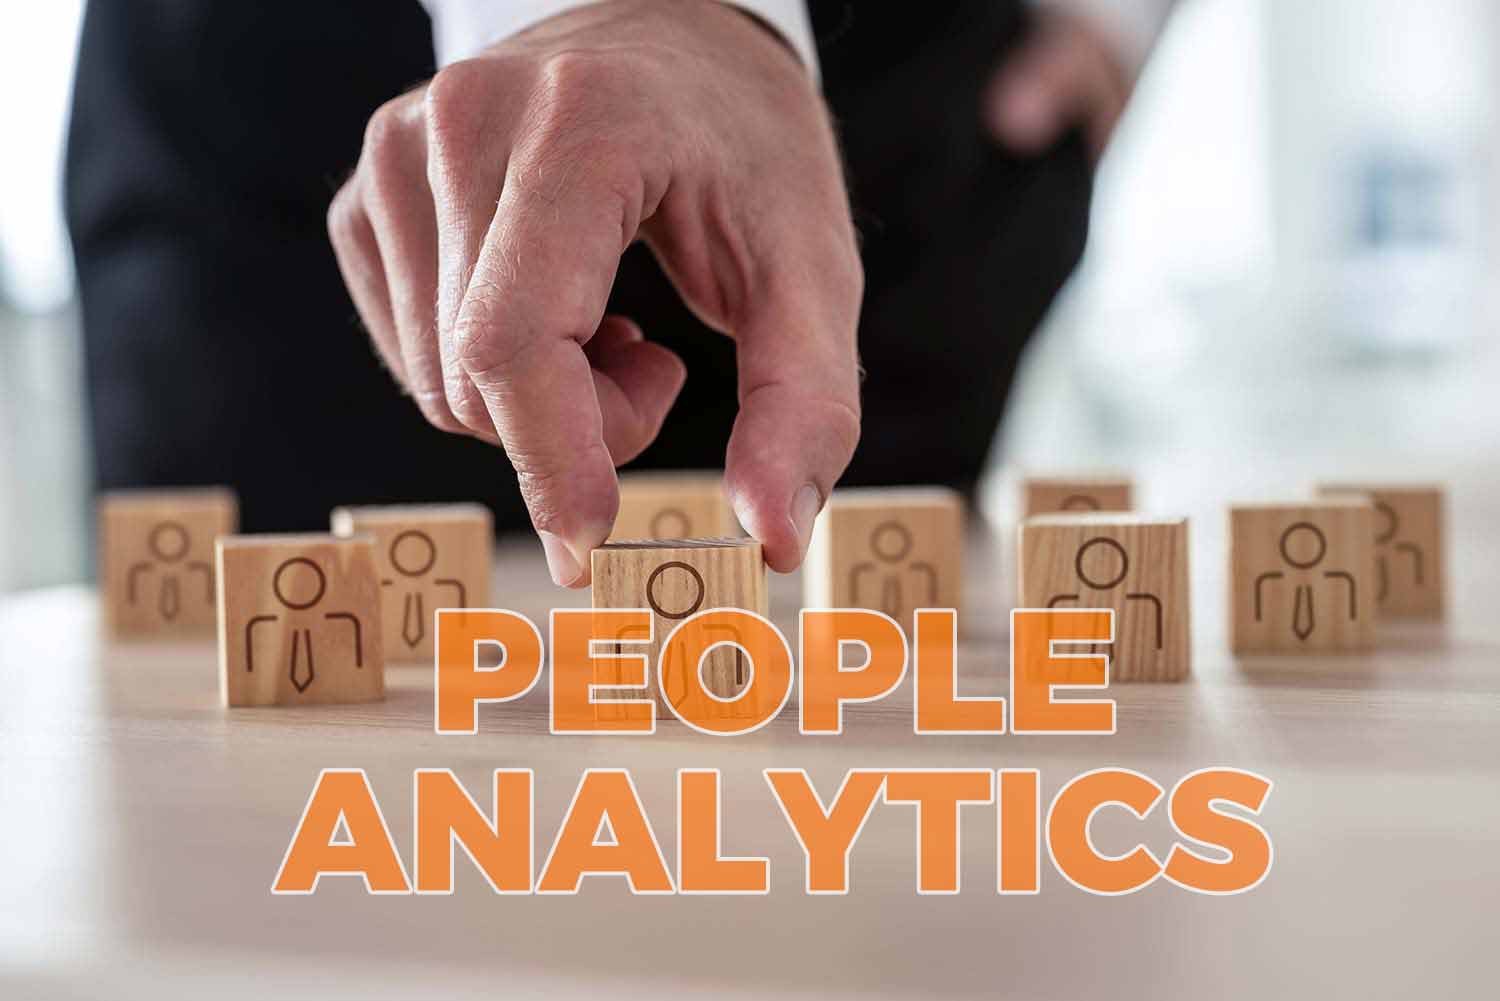 People Analytics